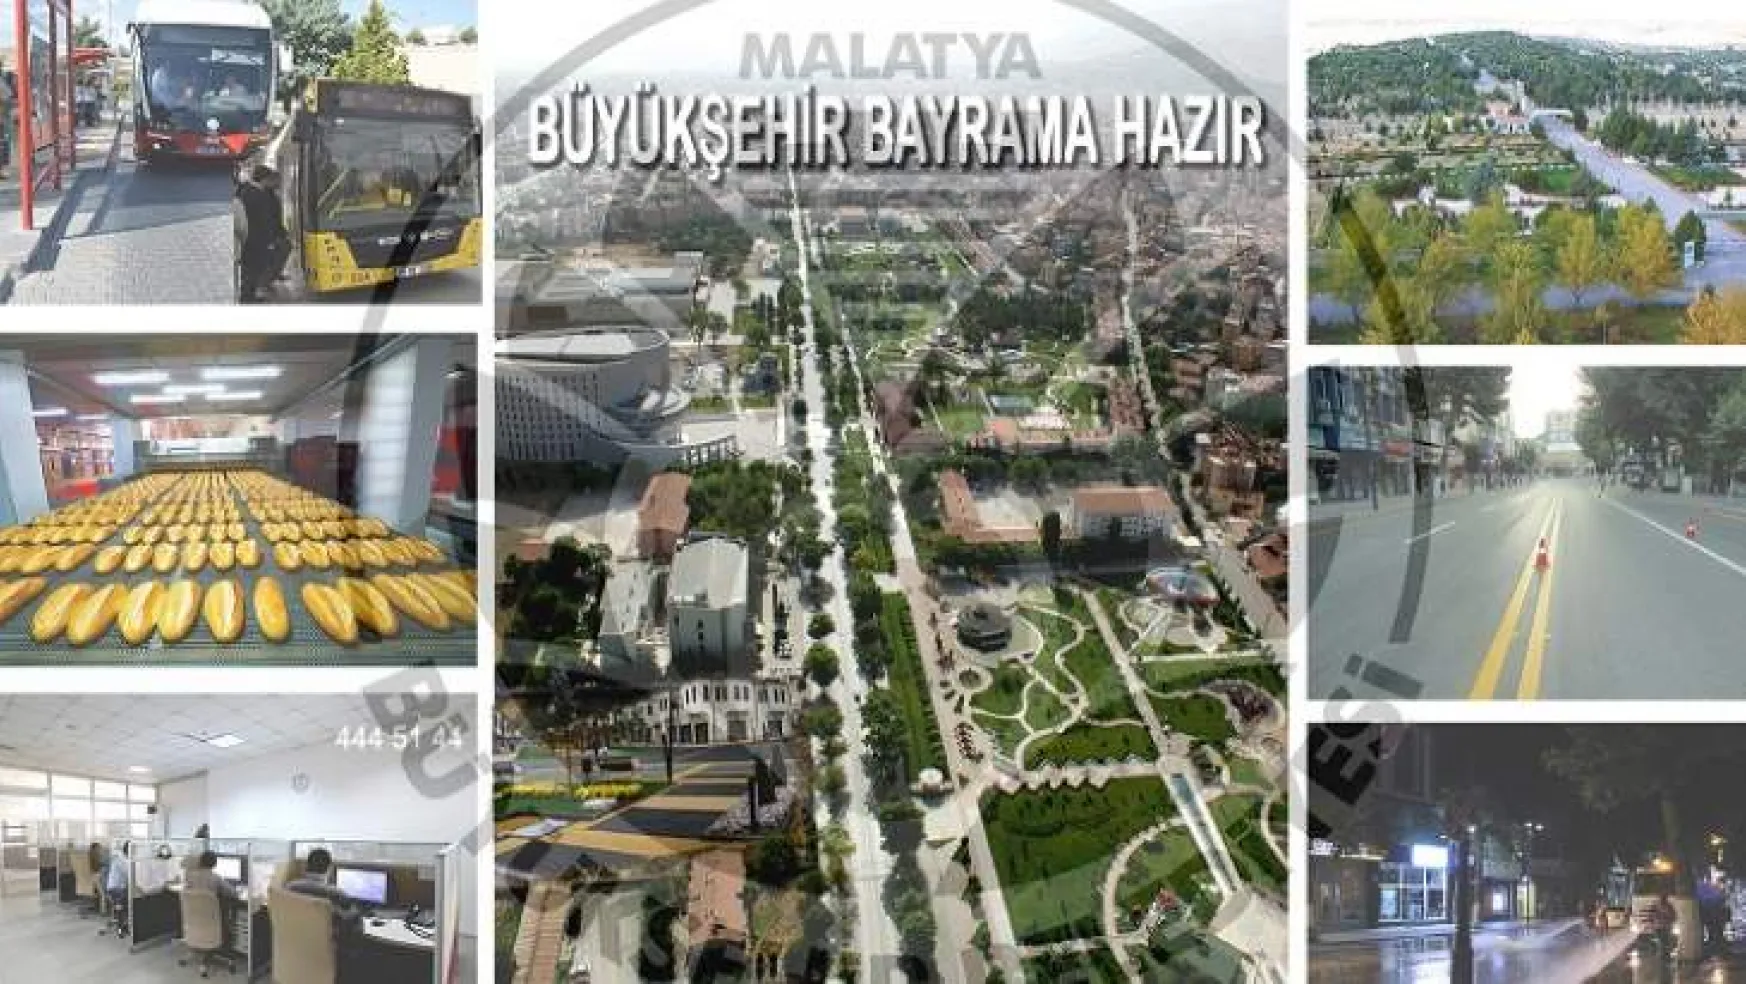 Malatya Büyükşehir Belediyesi Bayrama Hazır